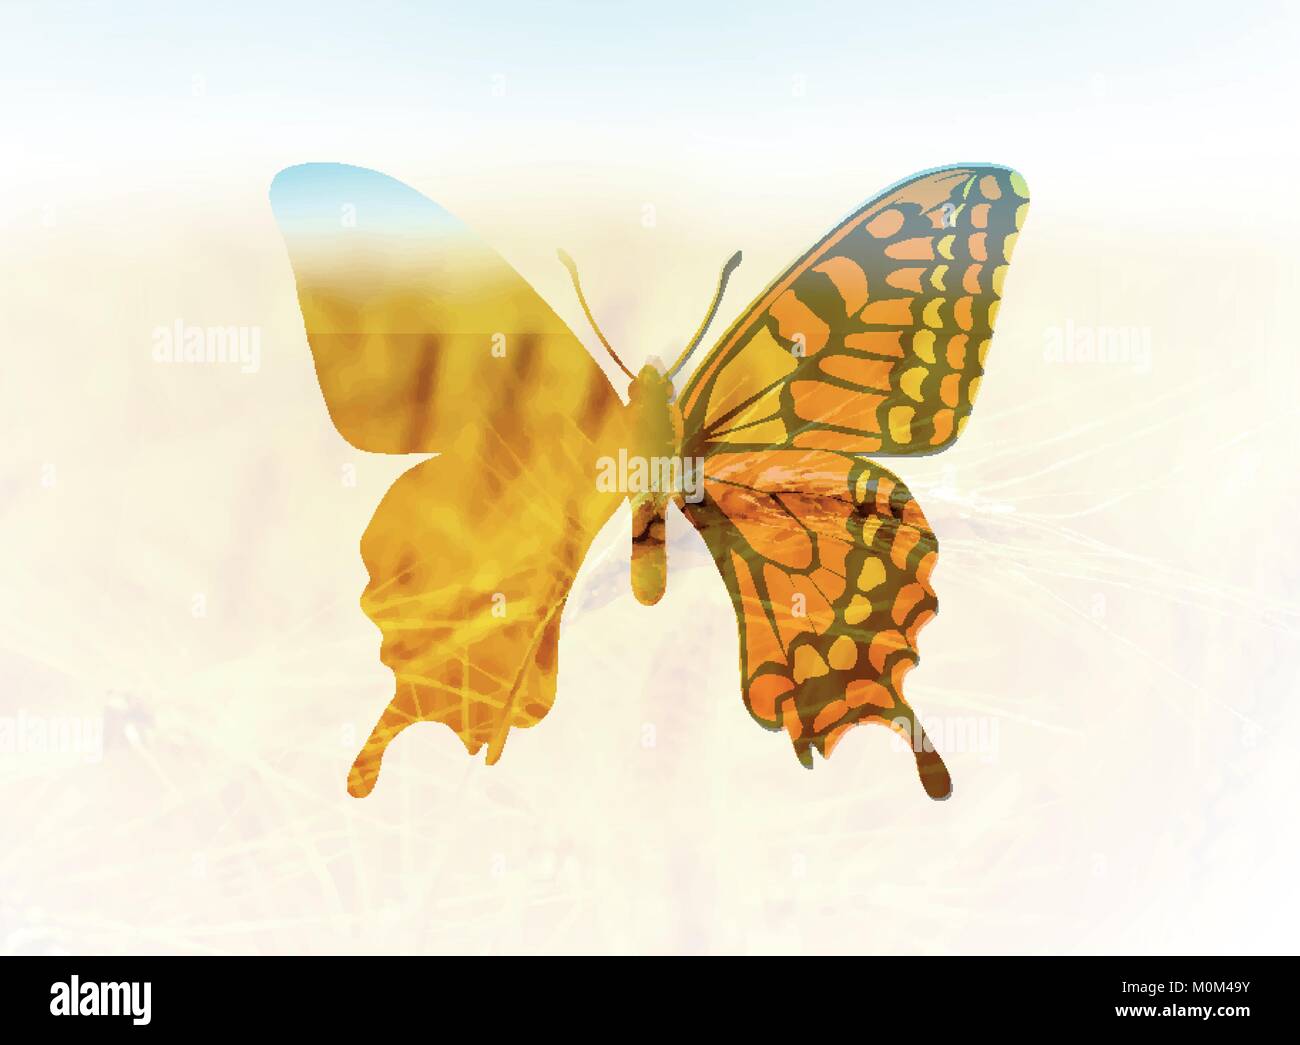 Ilustración vectorial de una mariposa en el estilo de la doble exposición. Saludos a primavera o verano Ilustración del Vector